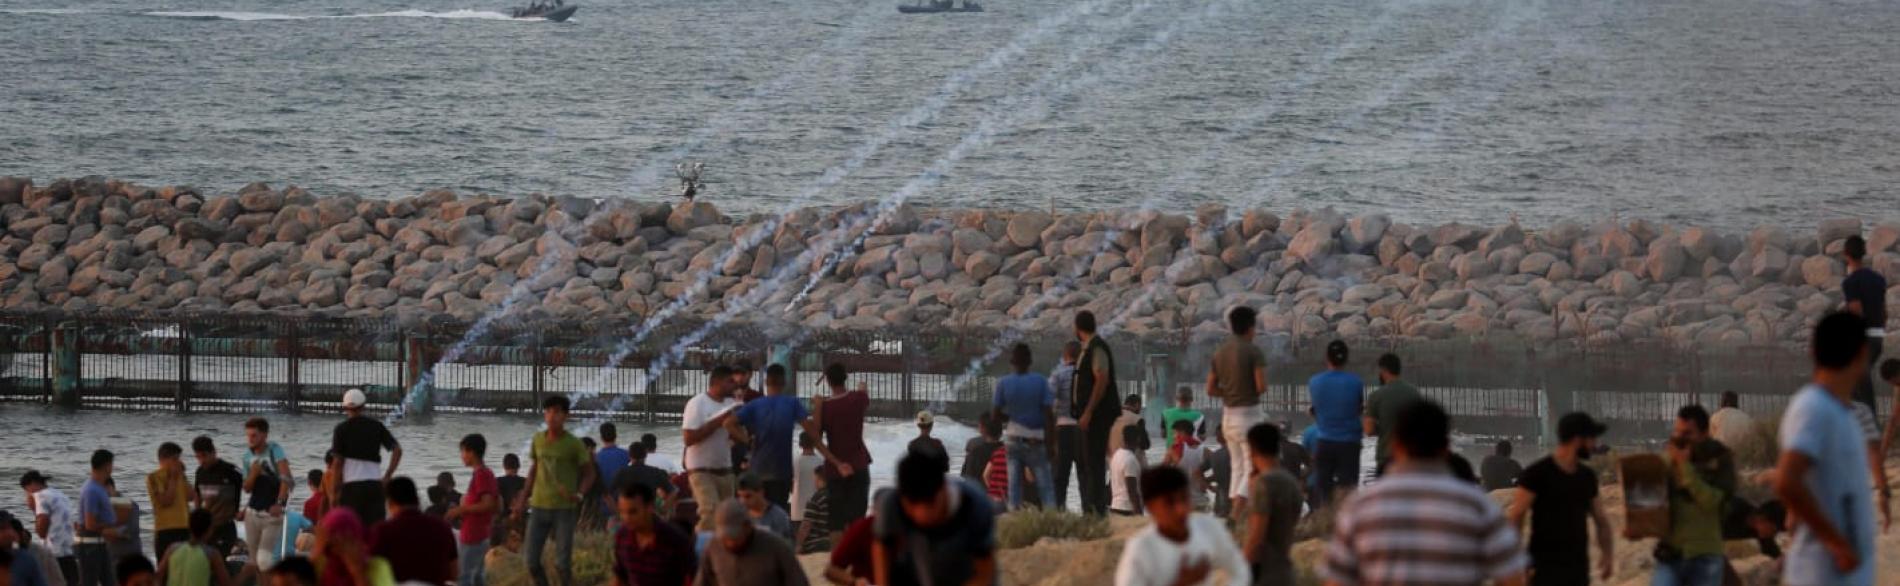 مظاهرة نظّمها فلسطينيون على الشاطئ قرب السياج إحتجاجًا على الحصار البحري، أيلول/سبتمبر 2018  © - تصوير أشرف عمرة